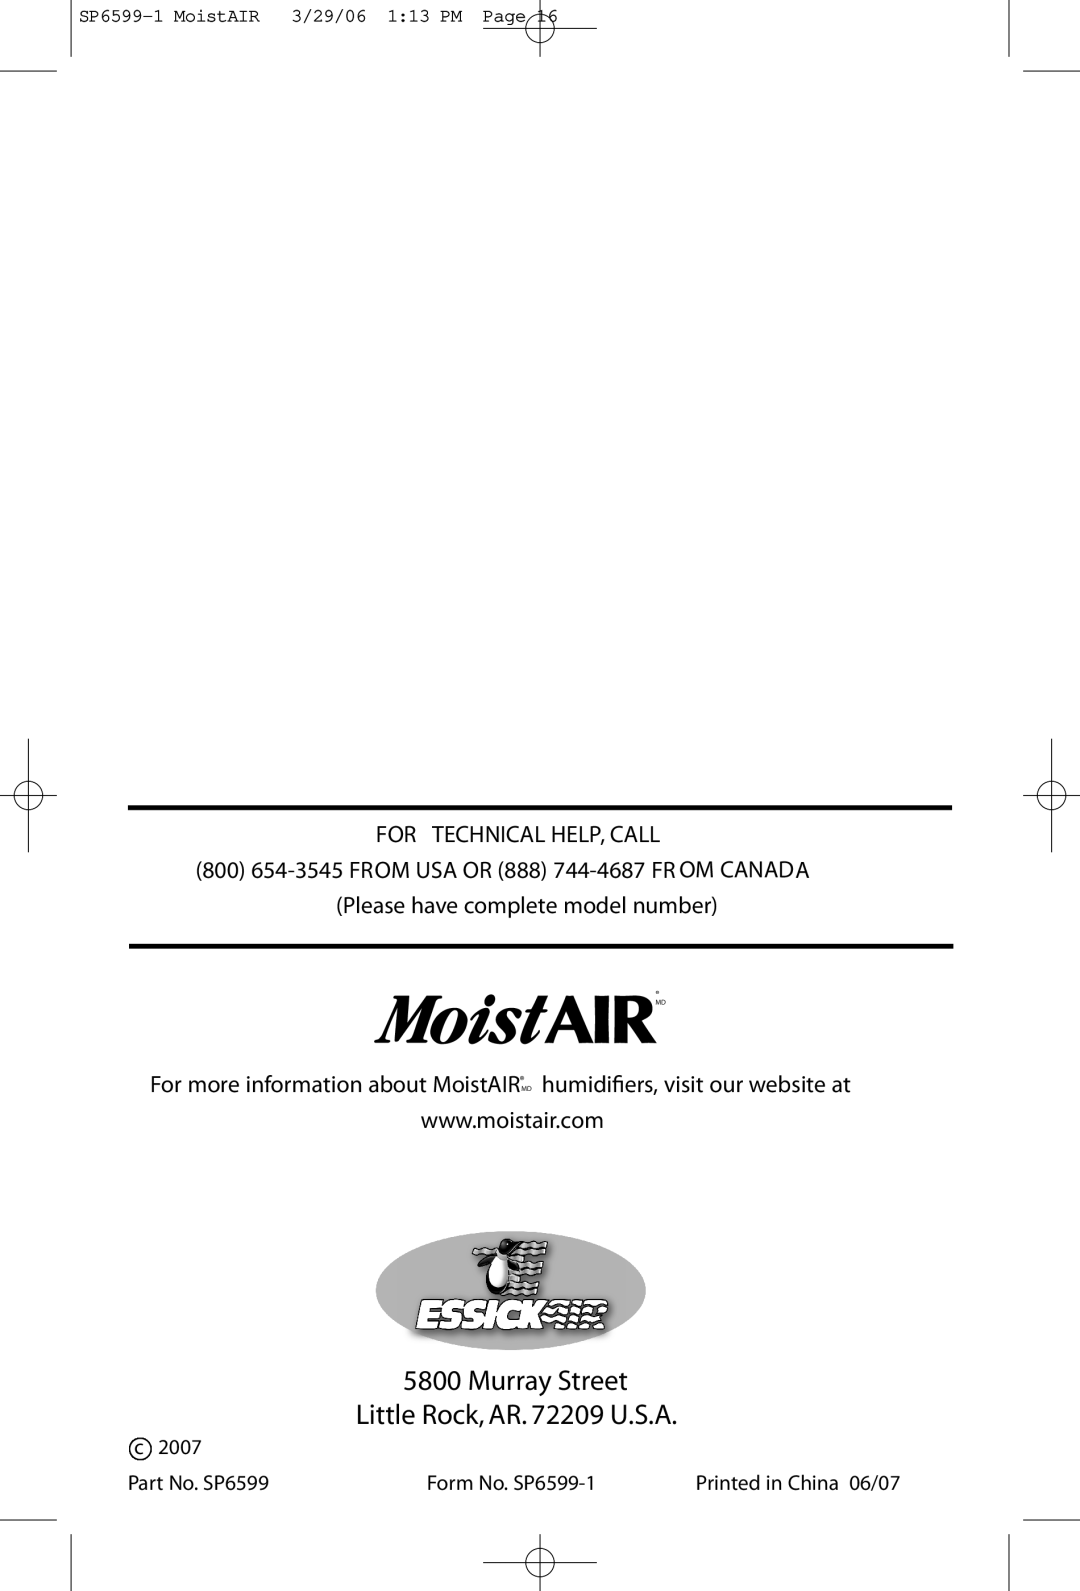 MoistAir MA 0800 0 owner manual Murray Street Little Rock, AR. 72209 U.S.A, For Technical Help, Call 